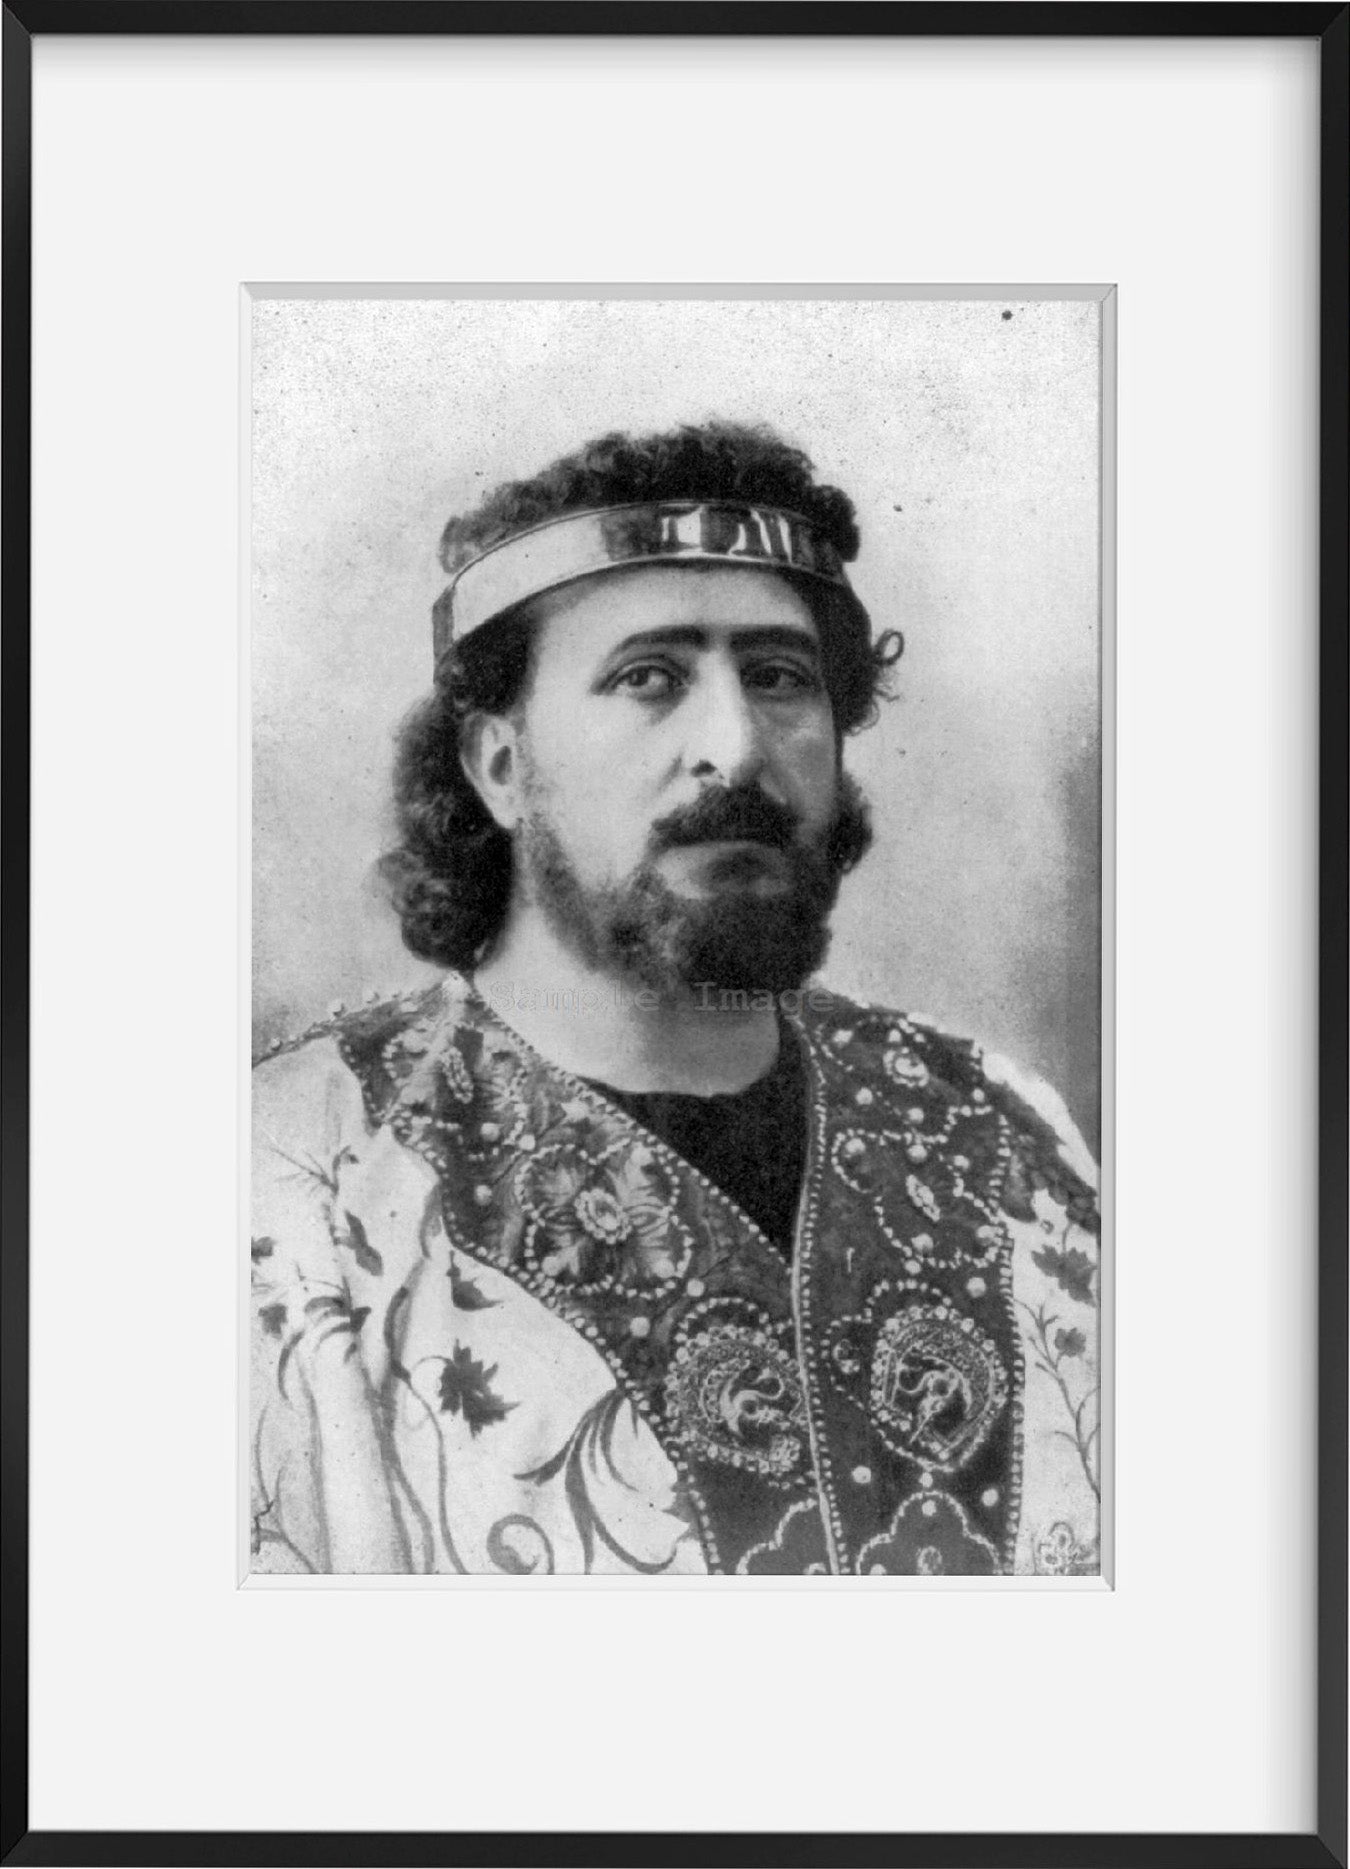 Photo: Mattia Battistini, 1856-1928, Italian operatic baritone, King of Baritones, o